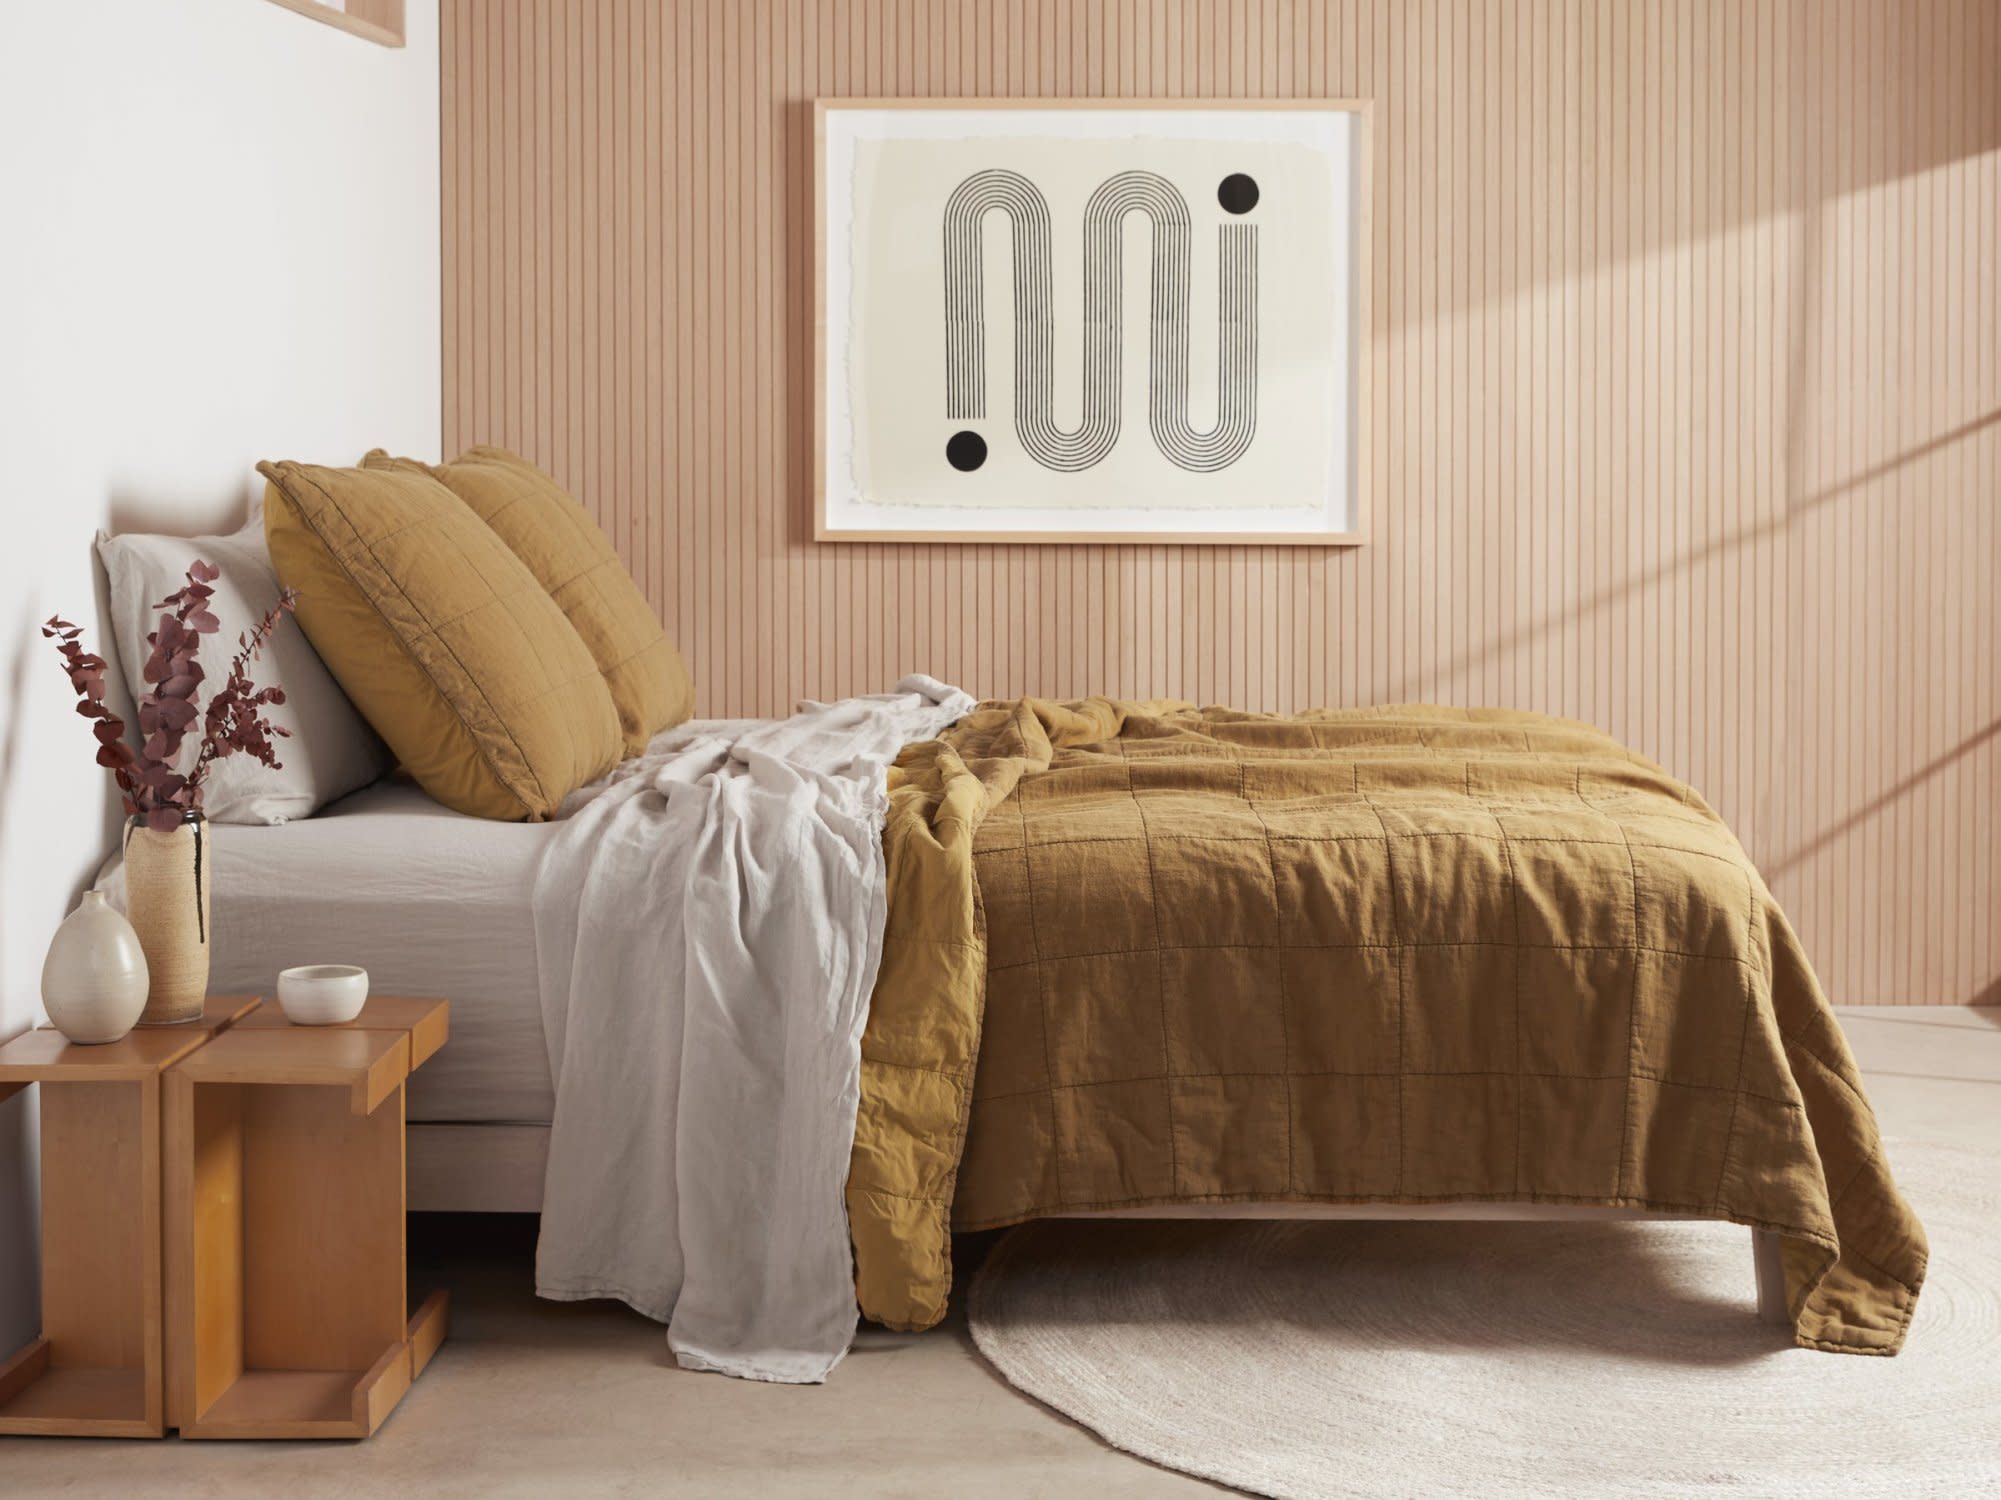 Ochre Linen Box Quilt Shown In A Room